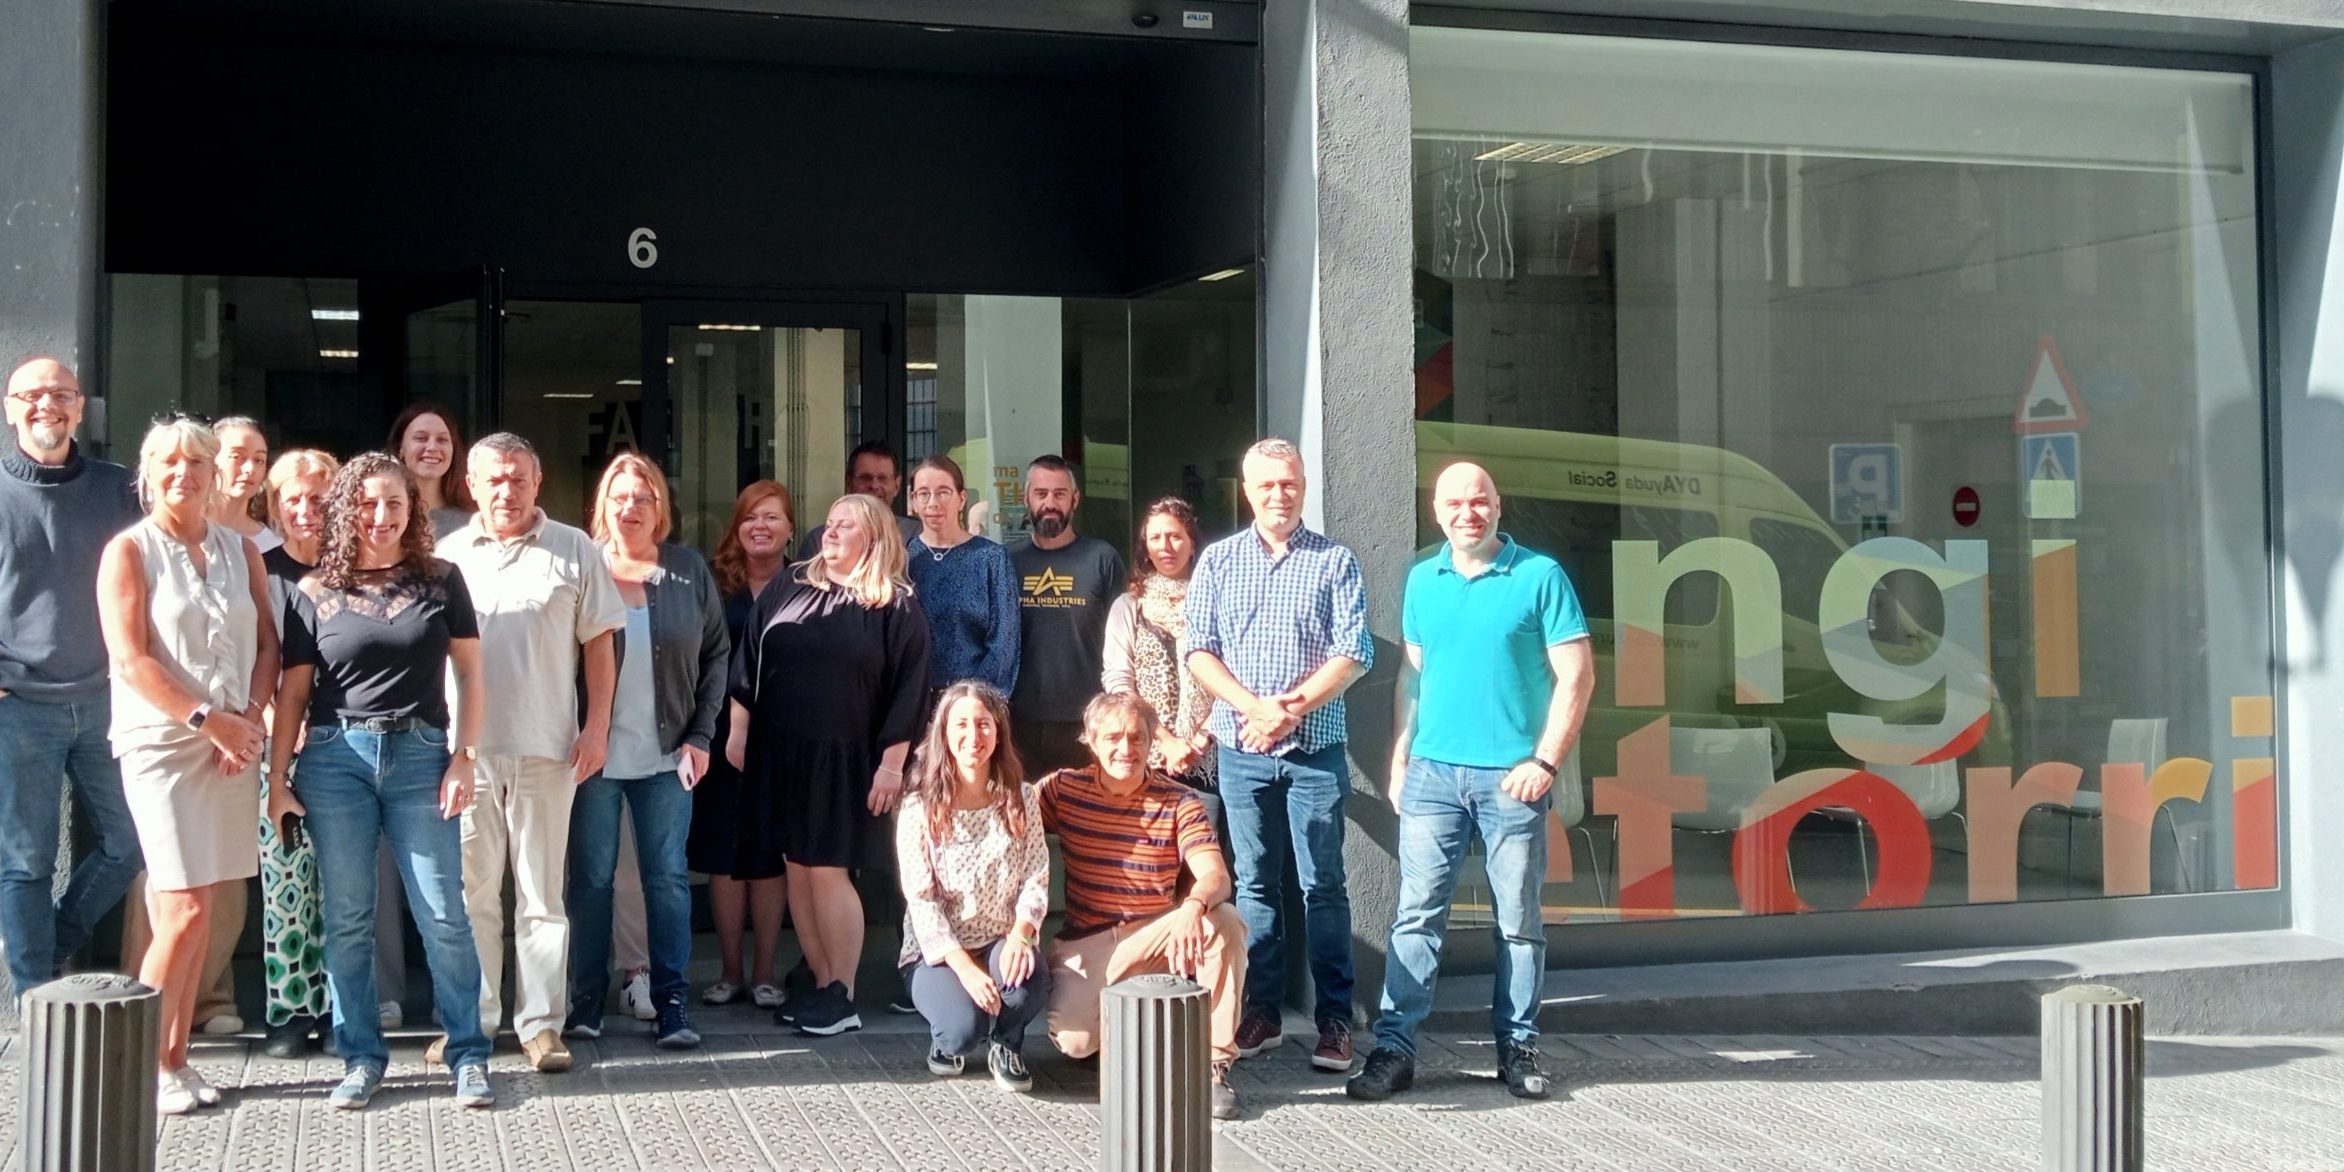 proyecto Erasmus+ “Connecting Europe” en Bilbao